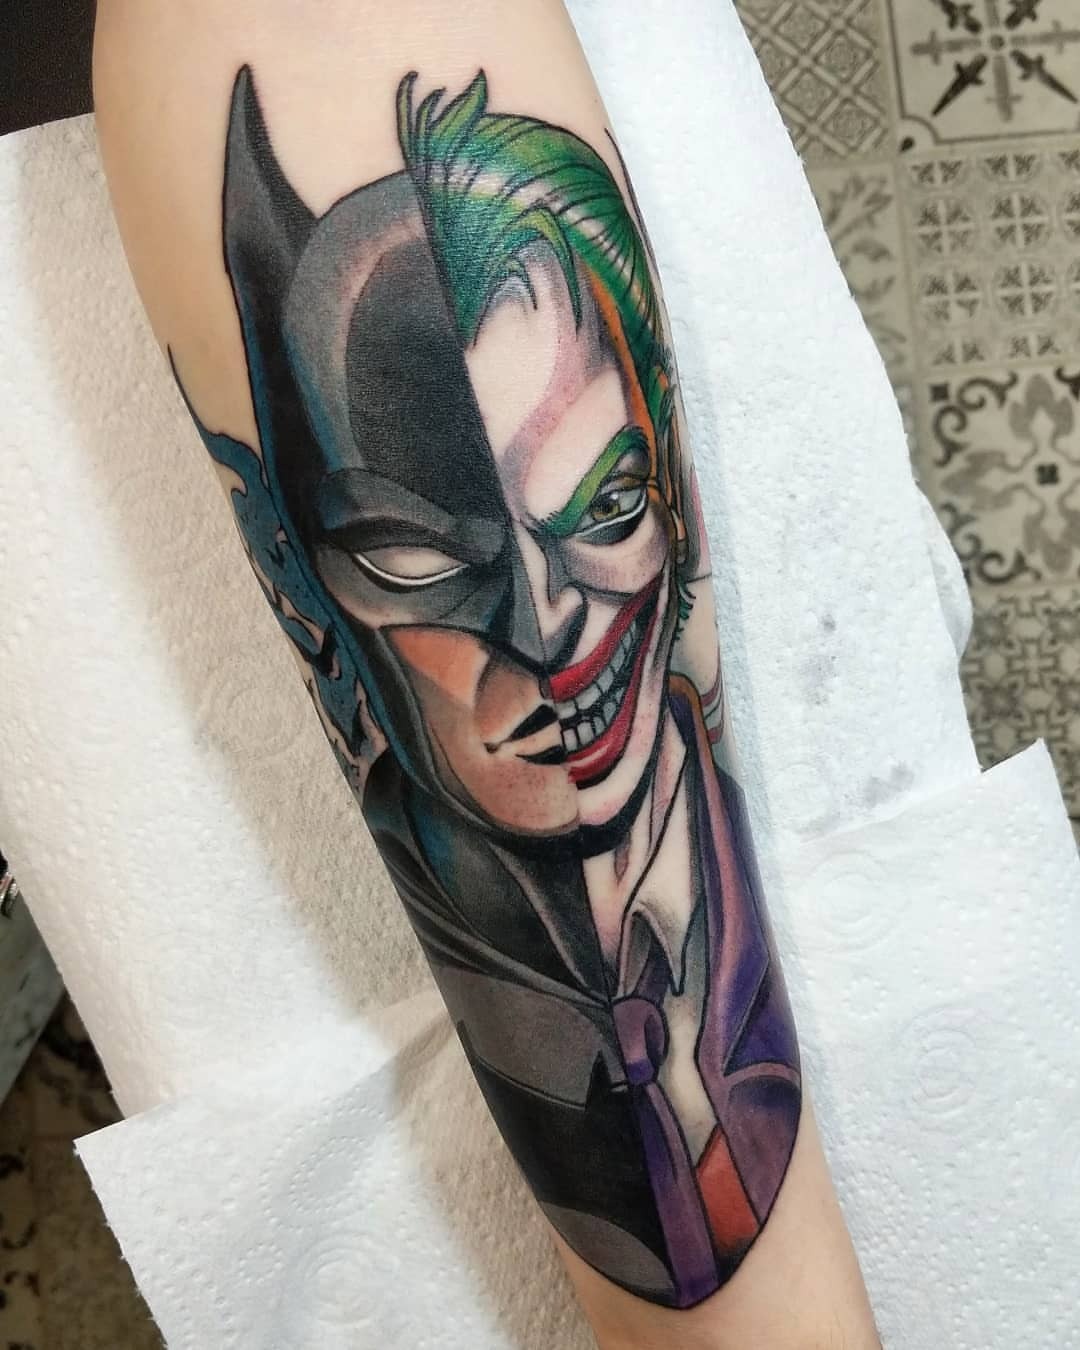 OLLIE KEABLE TATTOOS — Got to do a badass Batman tattoo for Lewis' first....